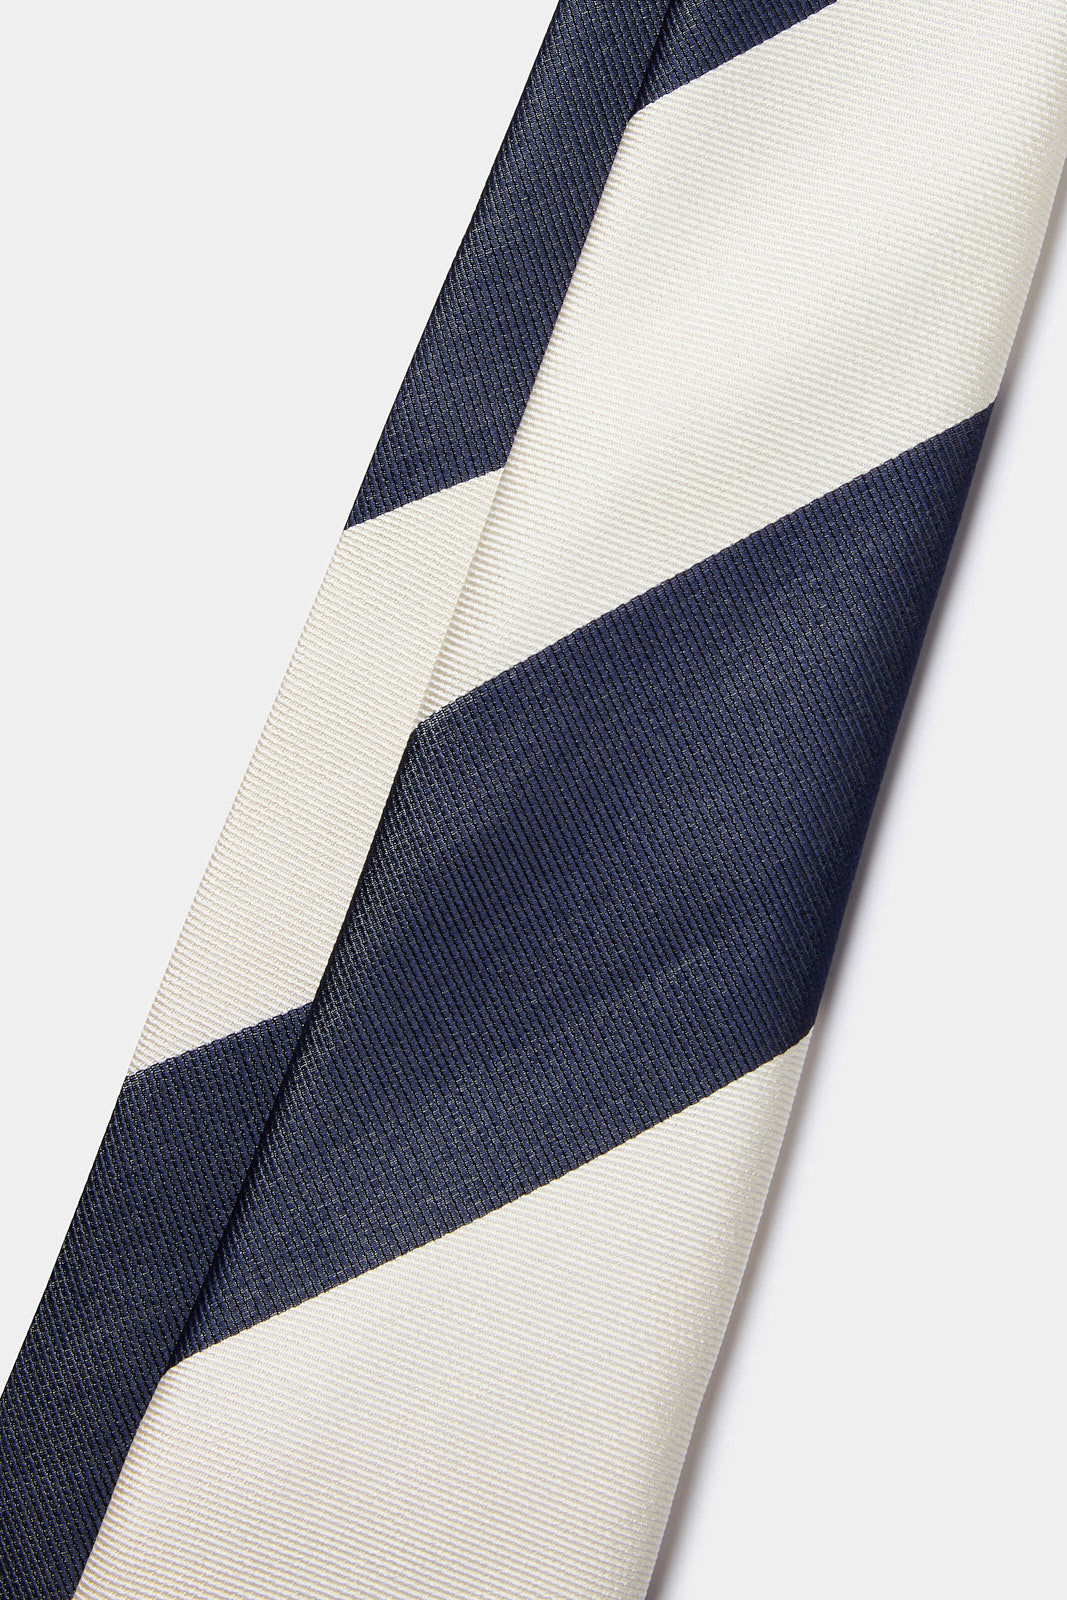 100% Silk Striped Tie in Midnight Blue